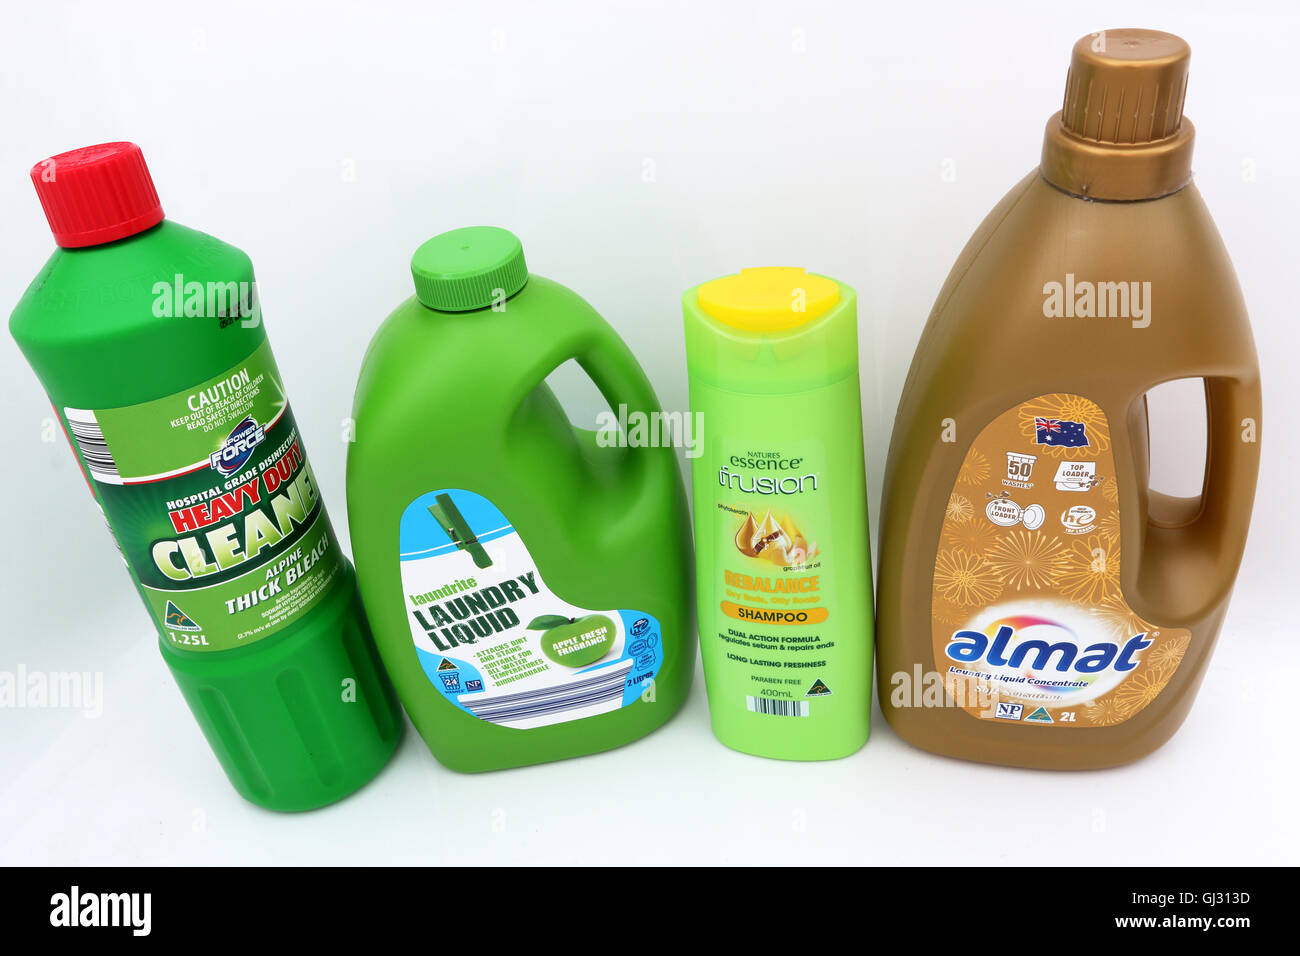 Aldi Australien Haushaltsprodukten wie Bleichmittel, Wäsche Flüssigkeit und Shampoo auf weißem Hintergrund Stockfoto